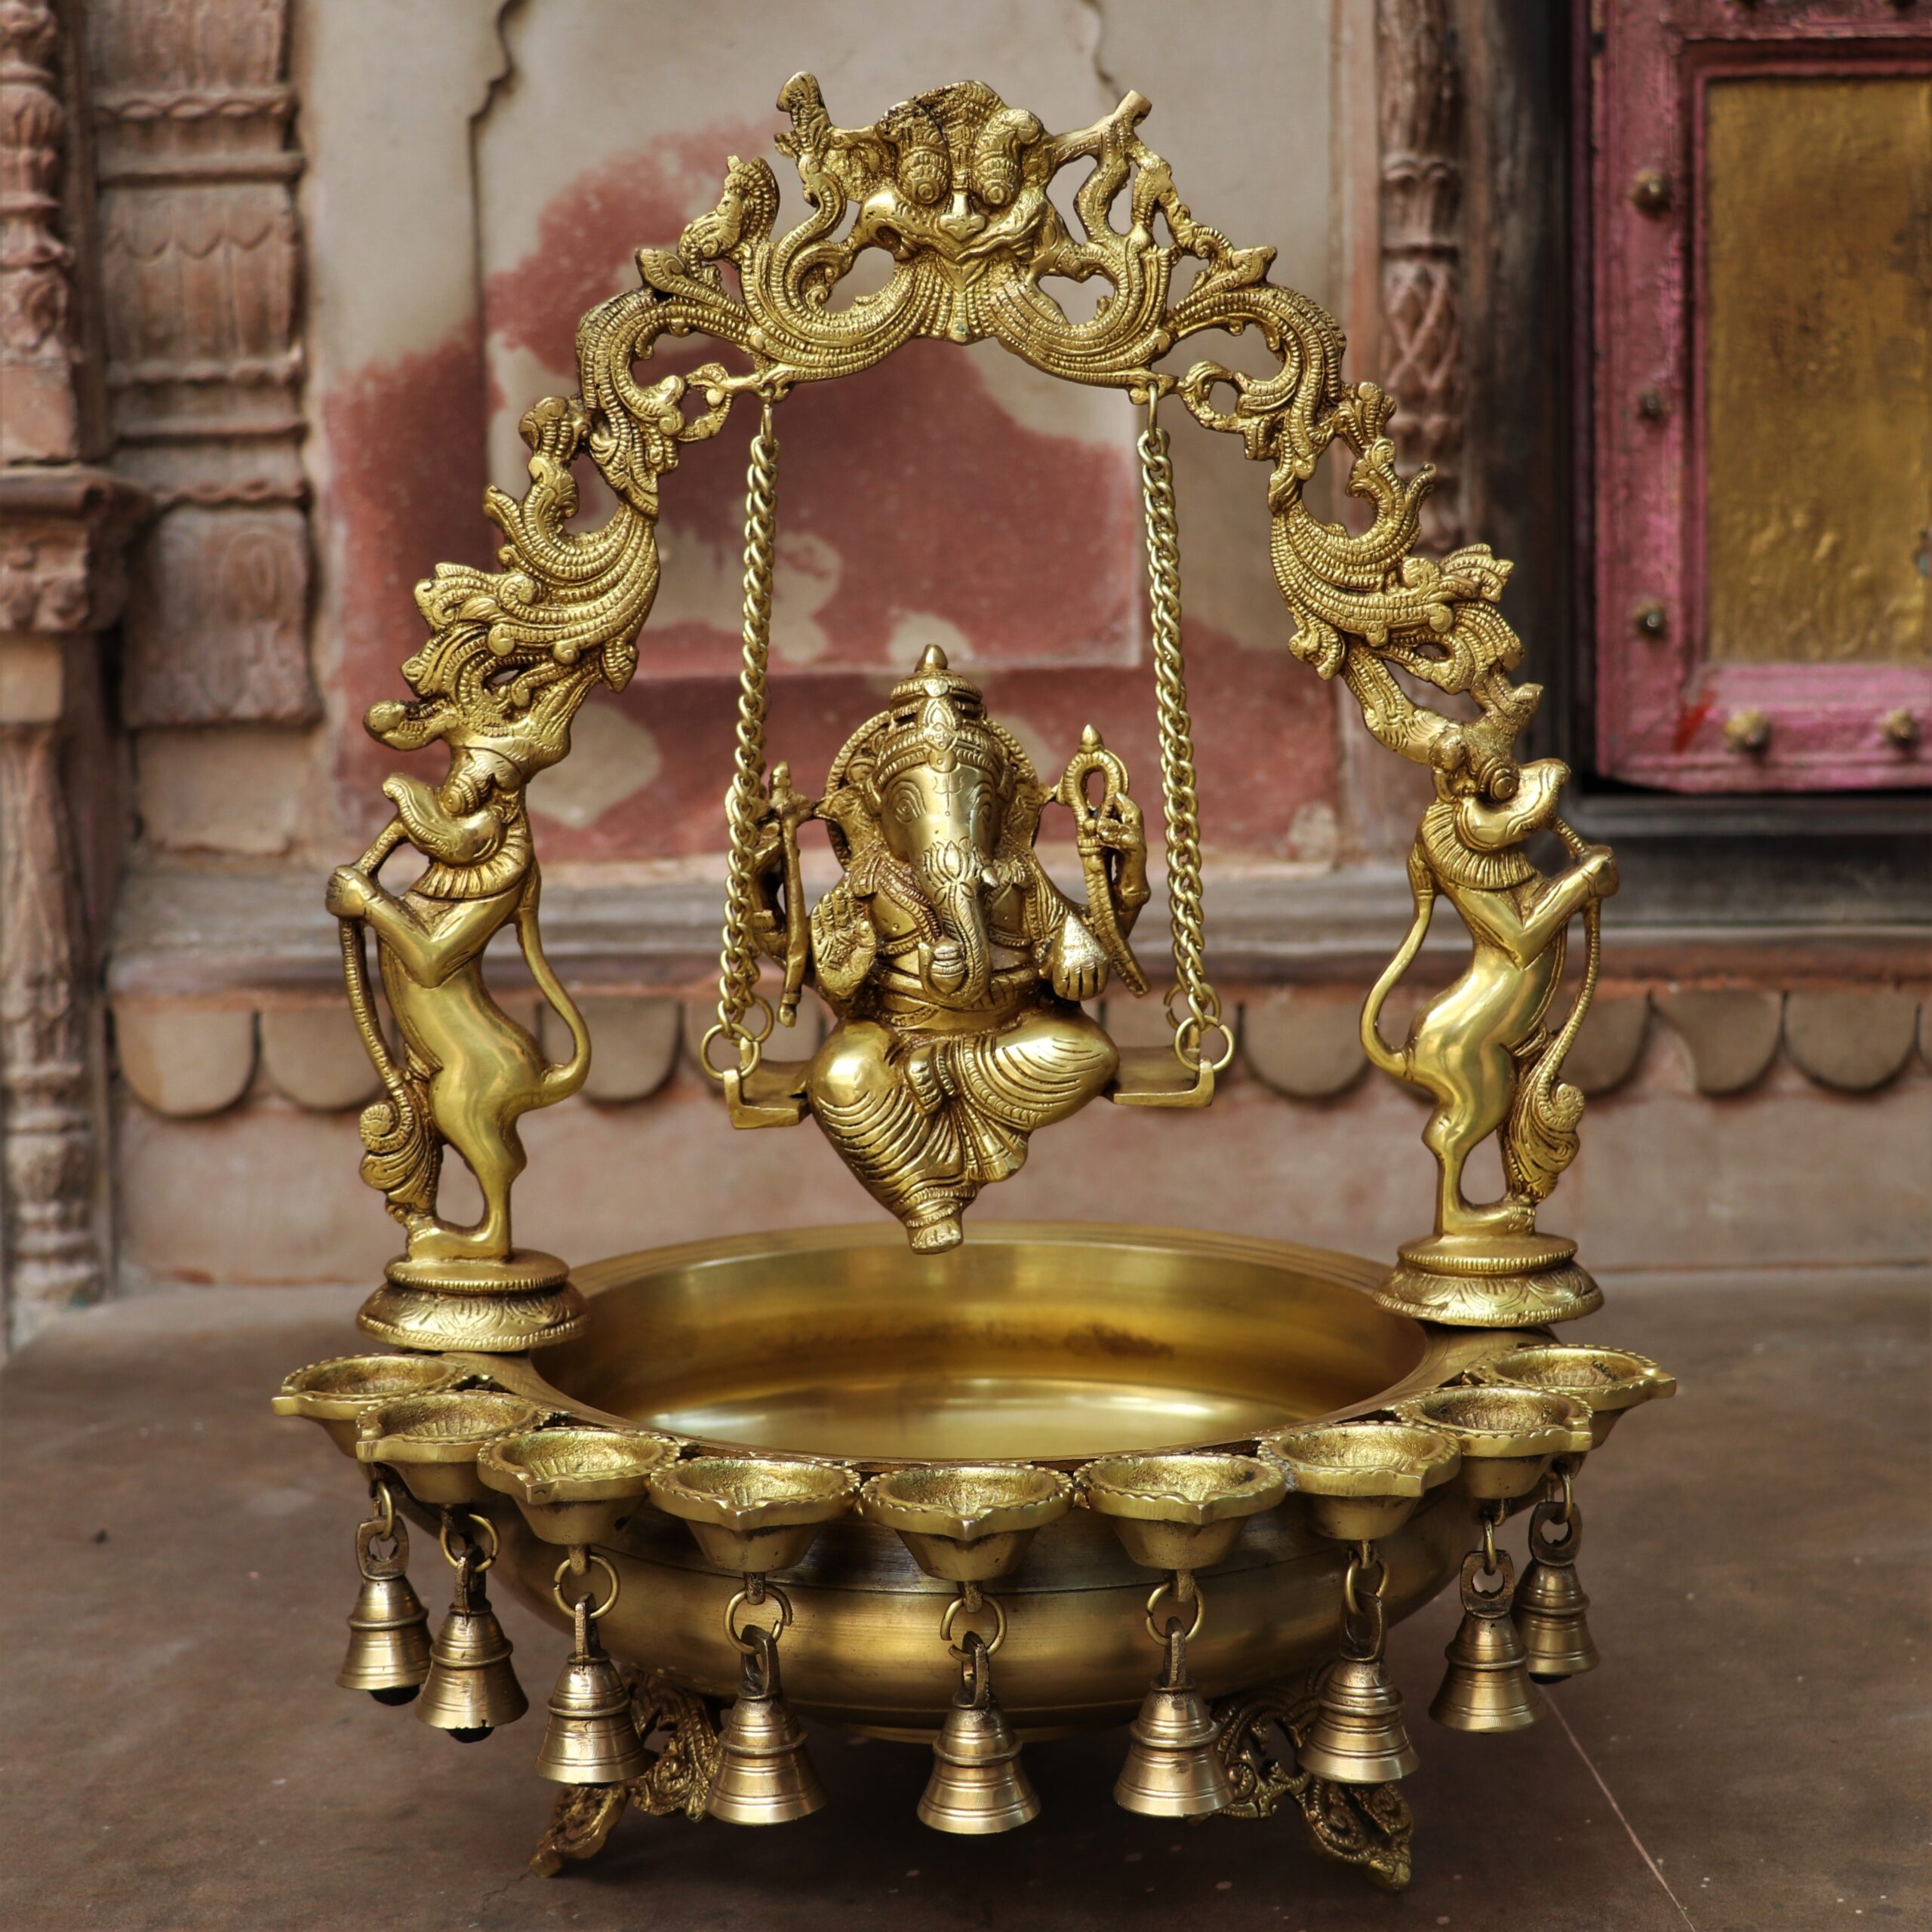 Urli with Ganesha and Diya